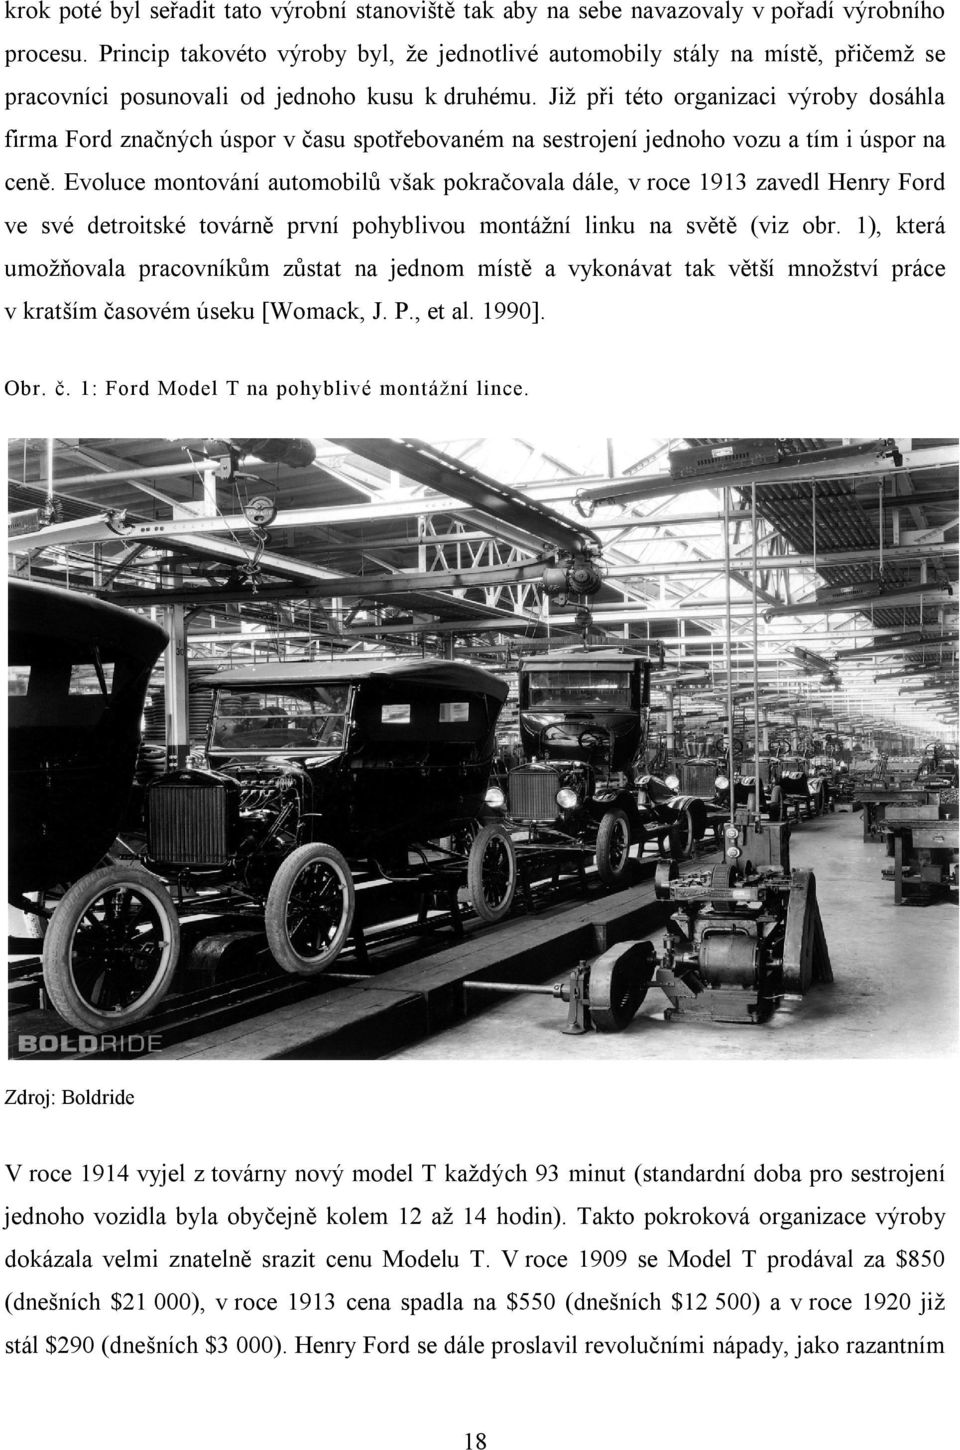 Již při této organizaci výroby dosáhla firma Ford značných úspor v času spotřebovaném na sestrojení jednoho vozu a tím i úspor na ceně.